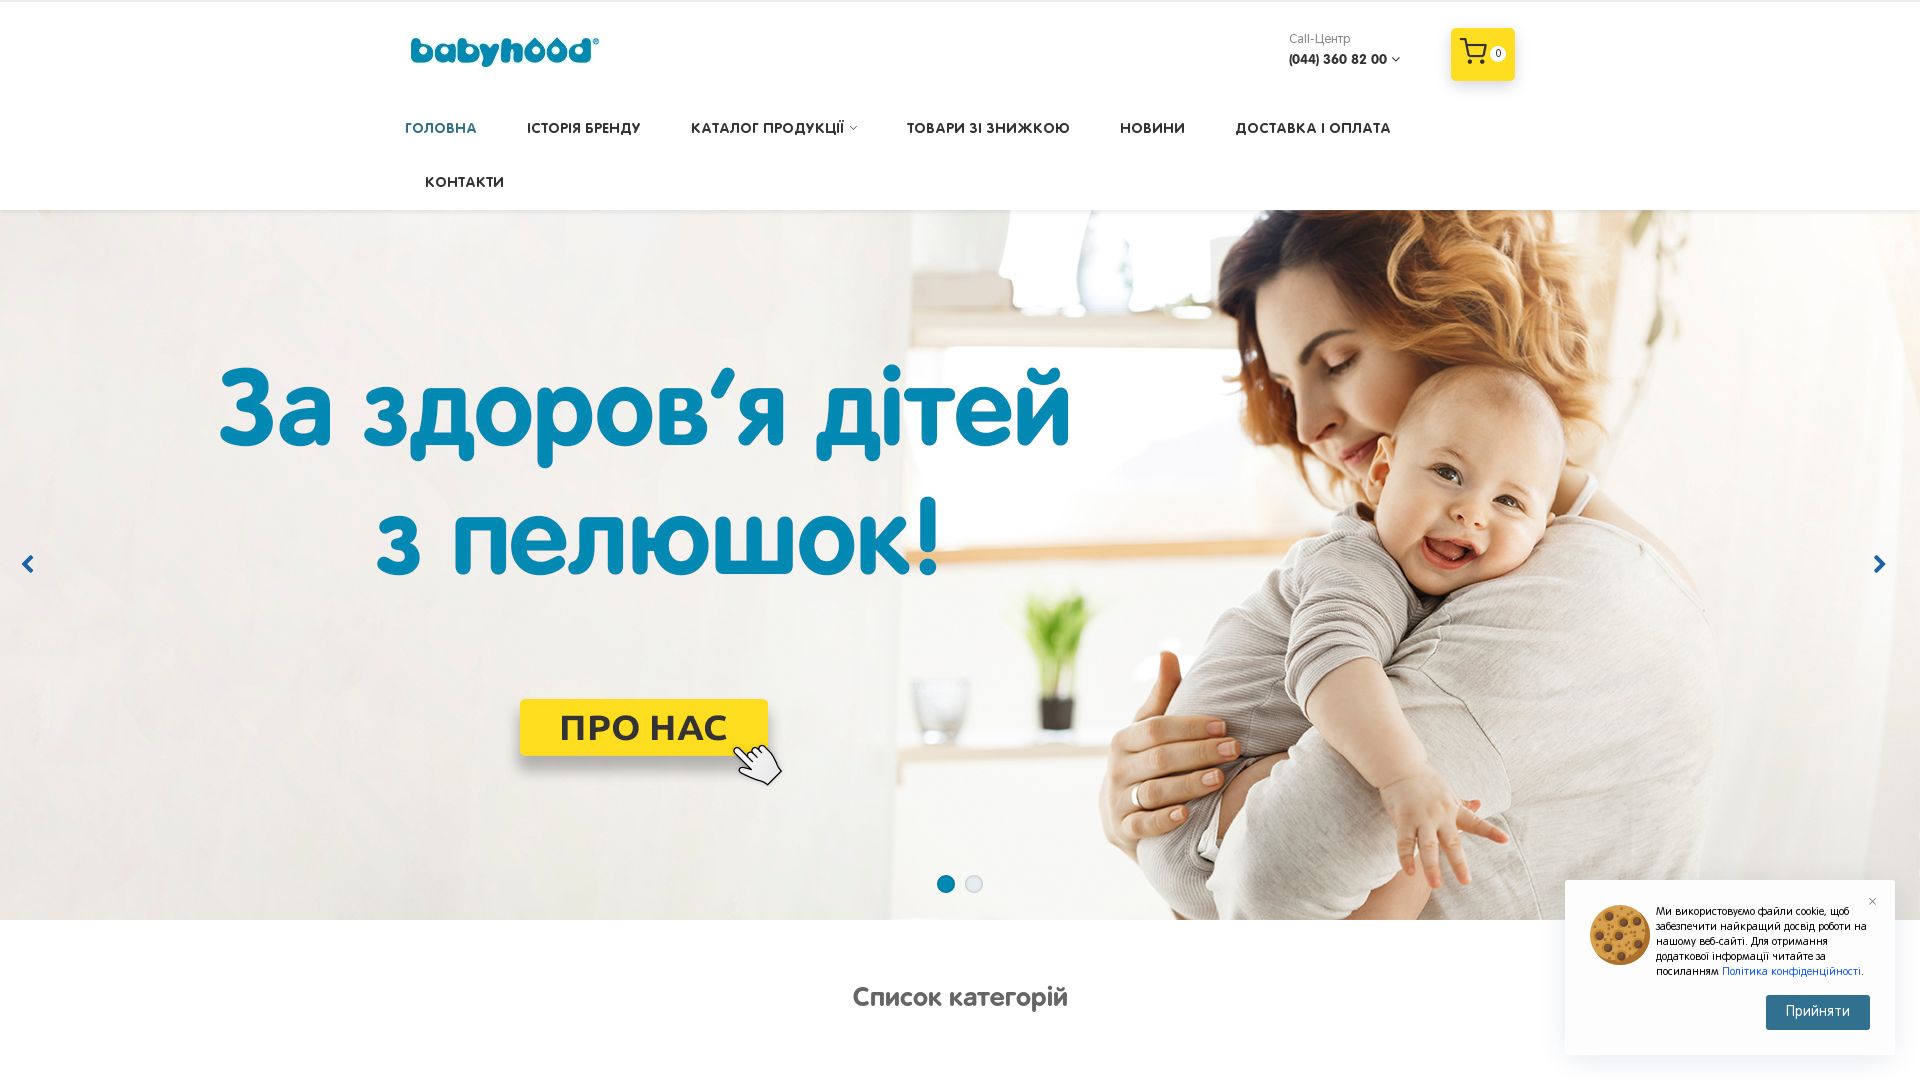 Status do site babyhood.ua está   ONLINE